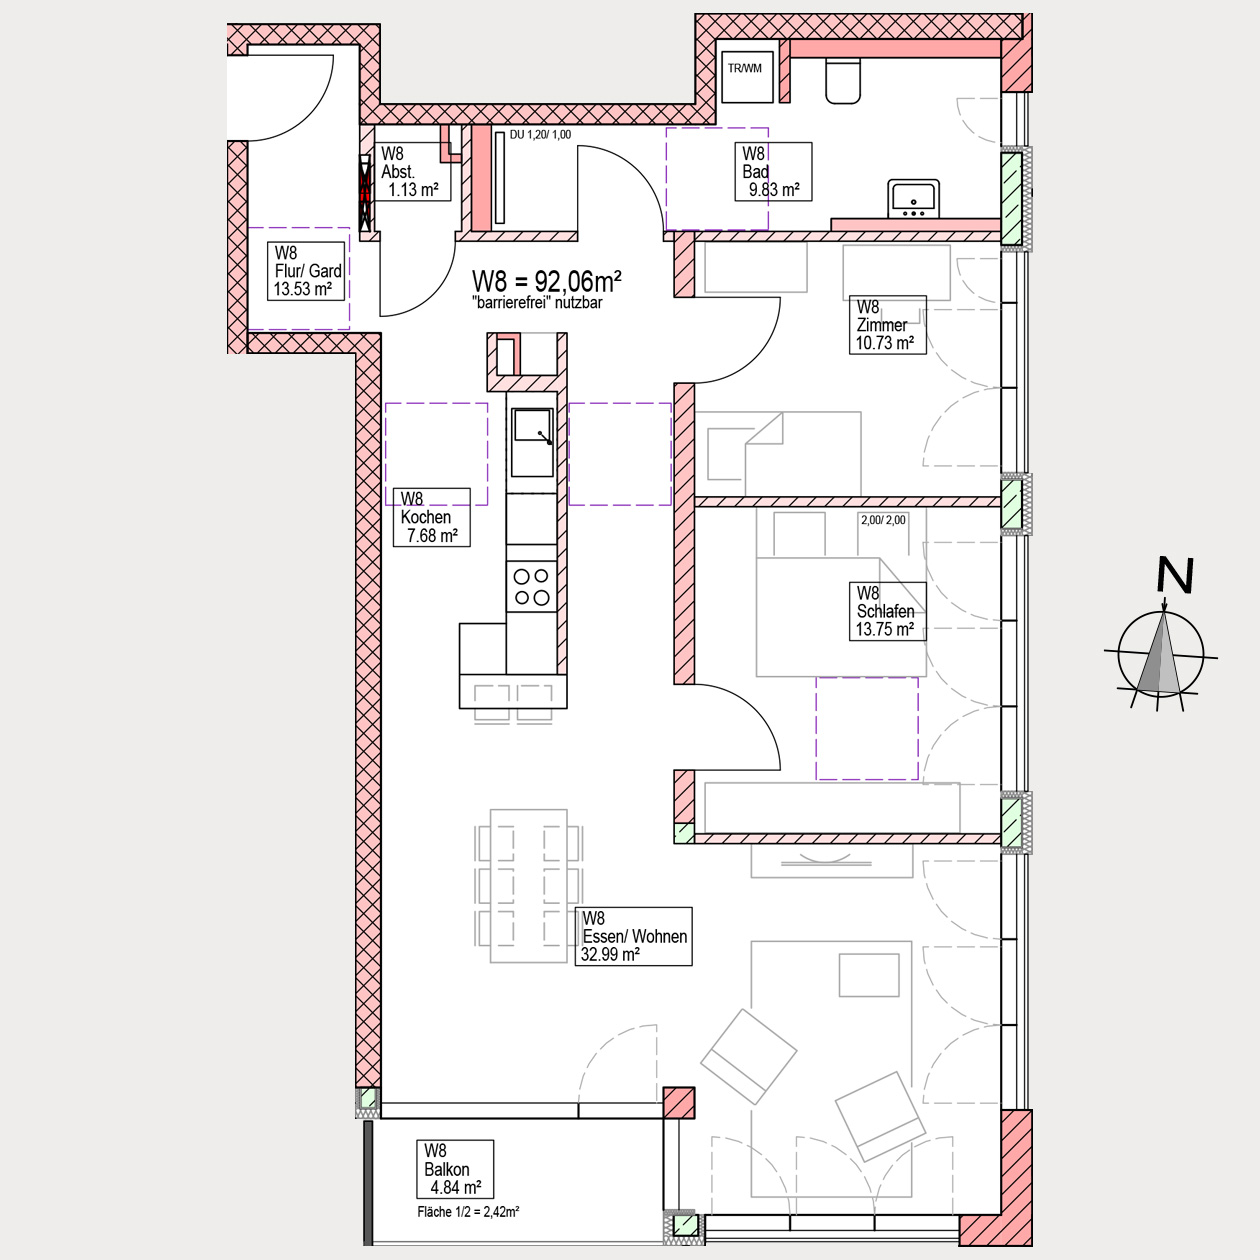 Grundriss, Wohnung kaufen, 3-Zimmer, 3-Zi-Wgn, Balkon, barrierefrei